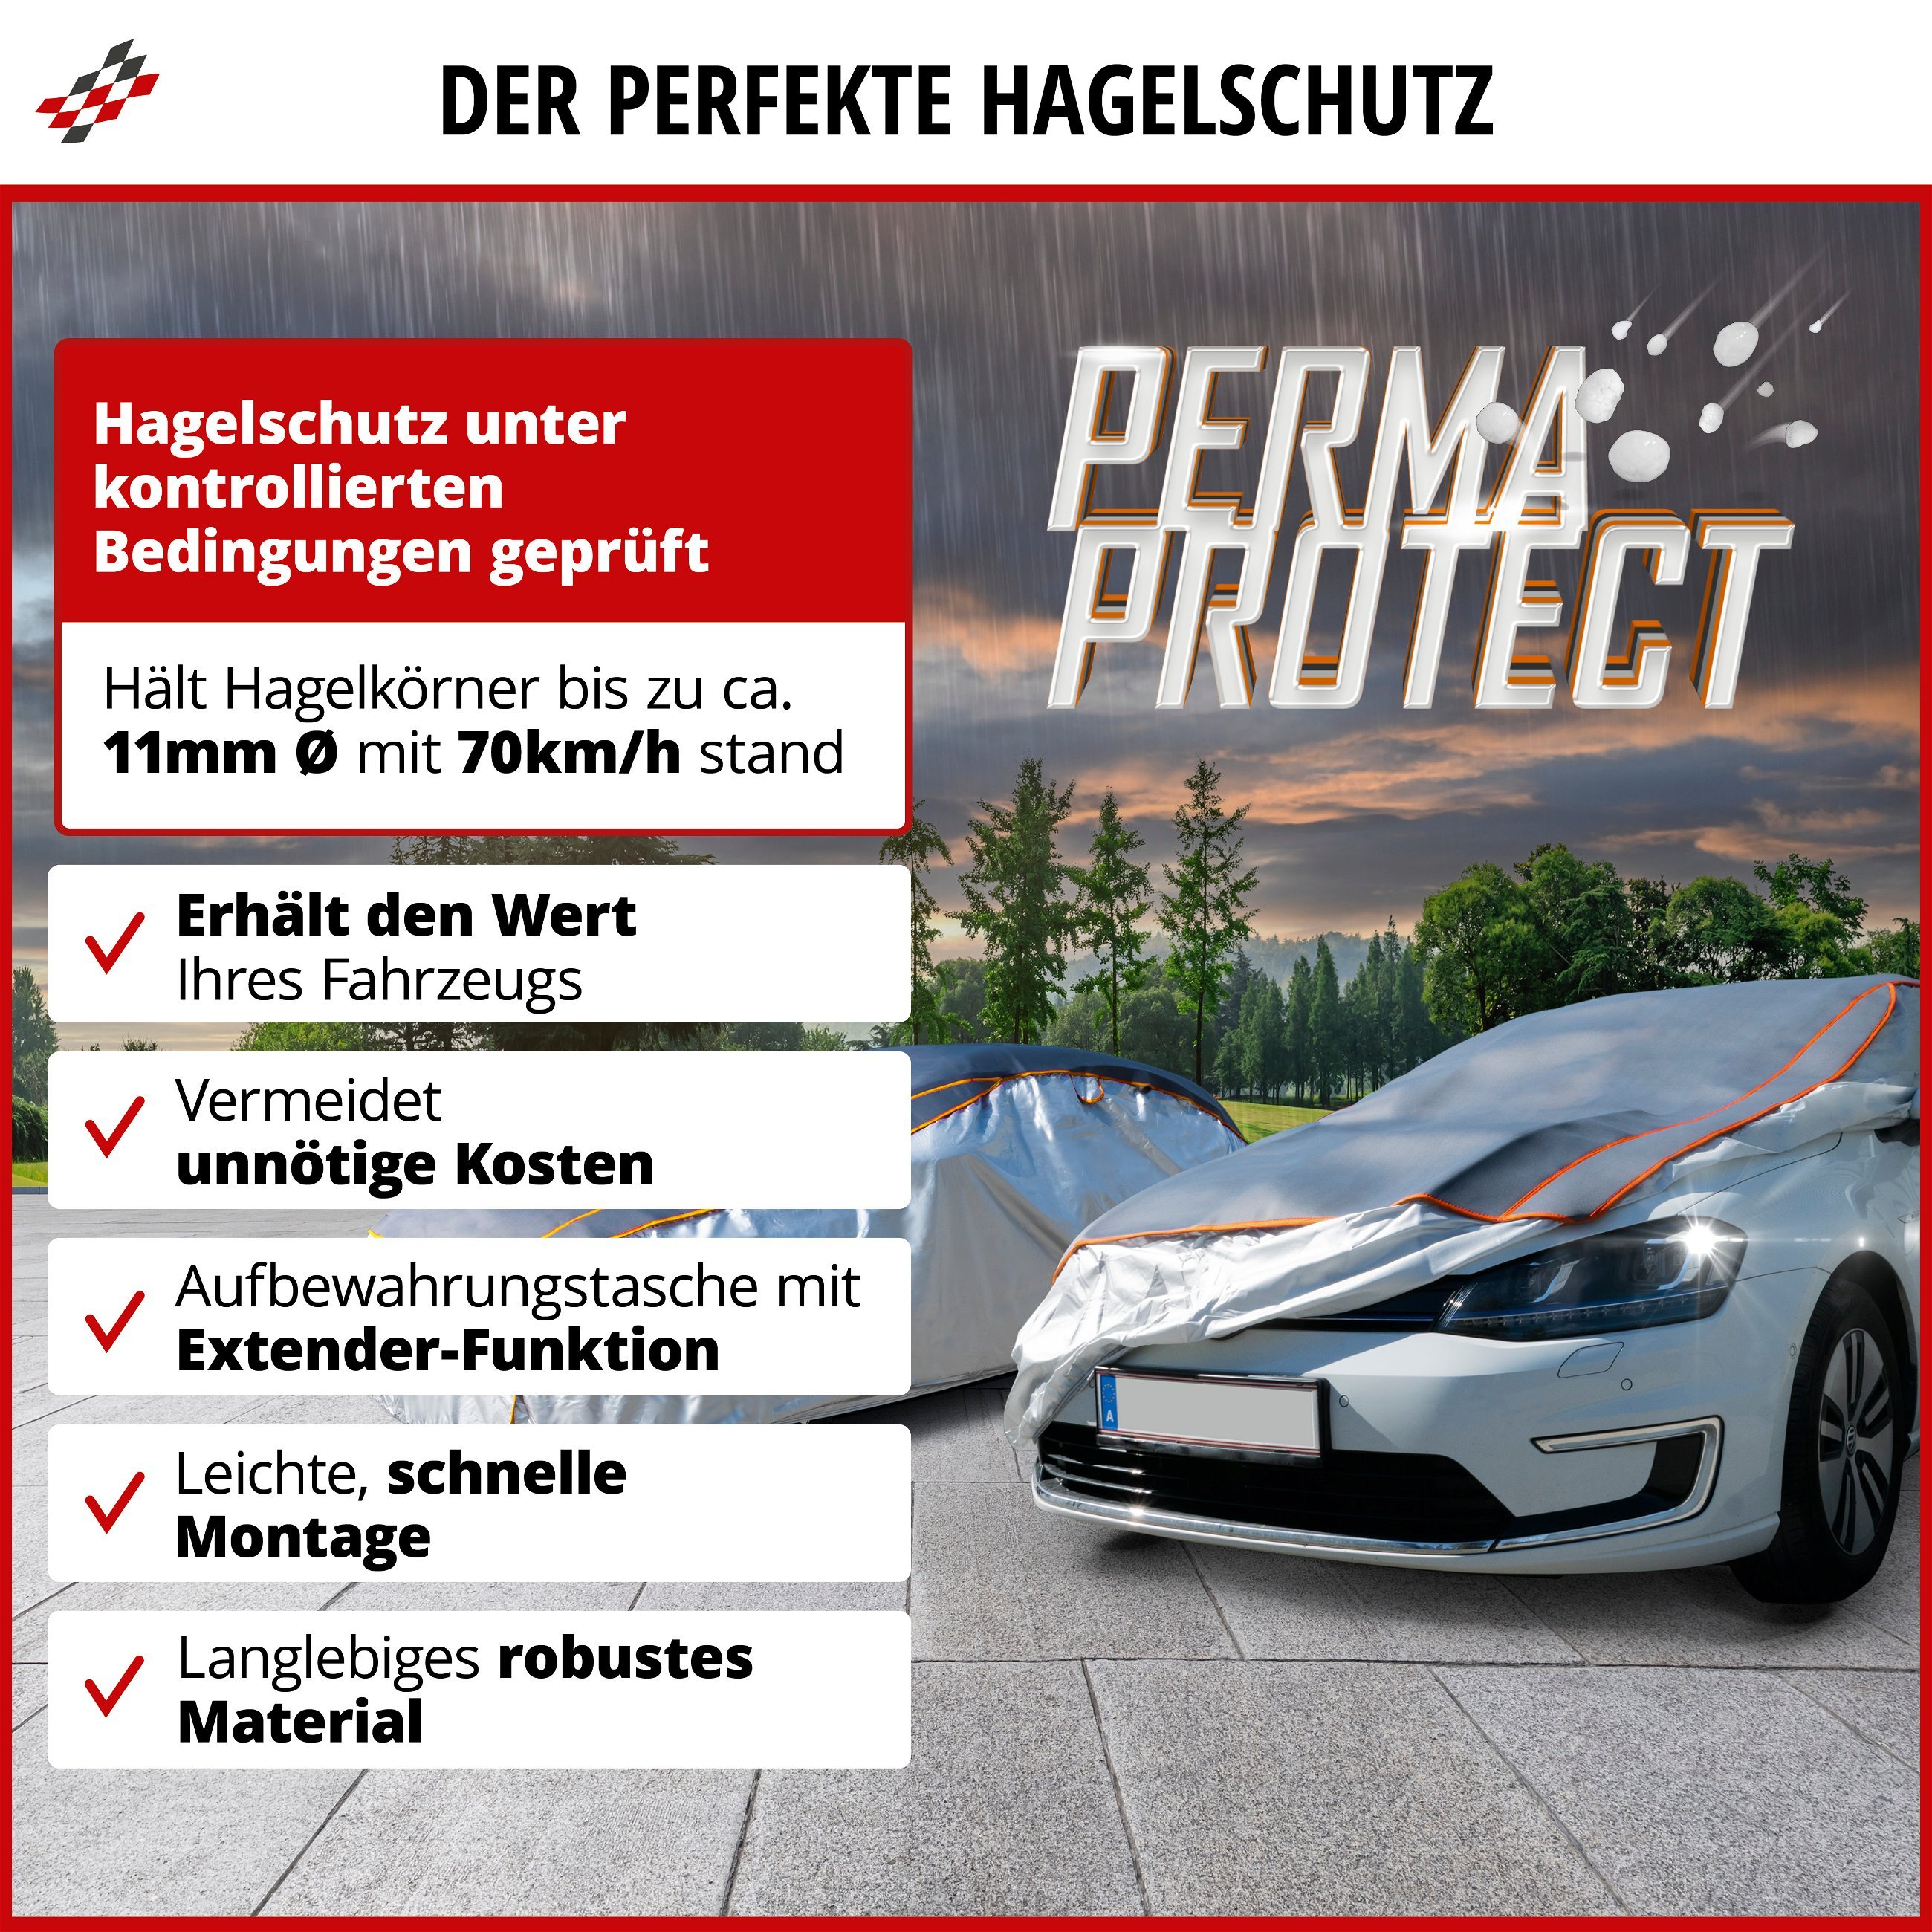 SUV Hagelschutzplane Perma Protect, Hagelschutzgarage Größe M